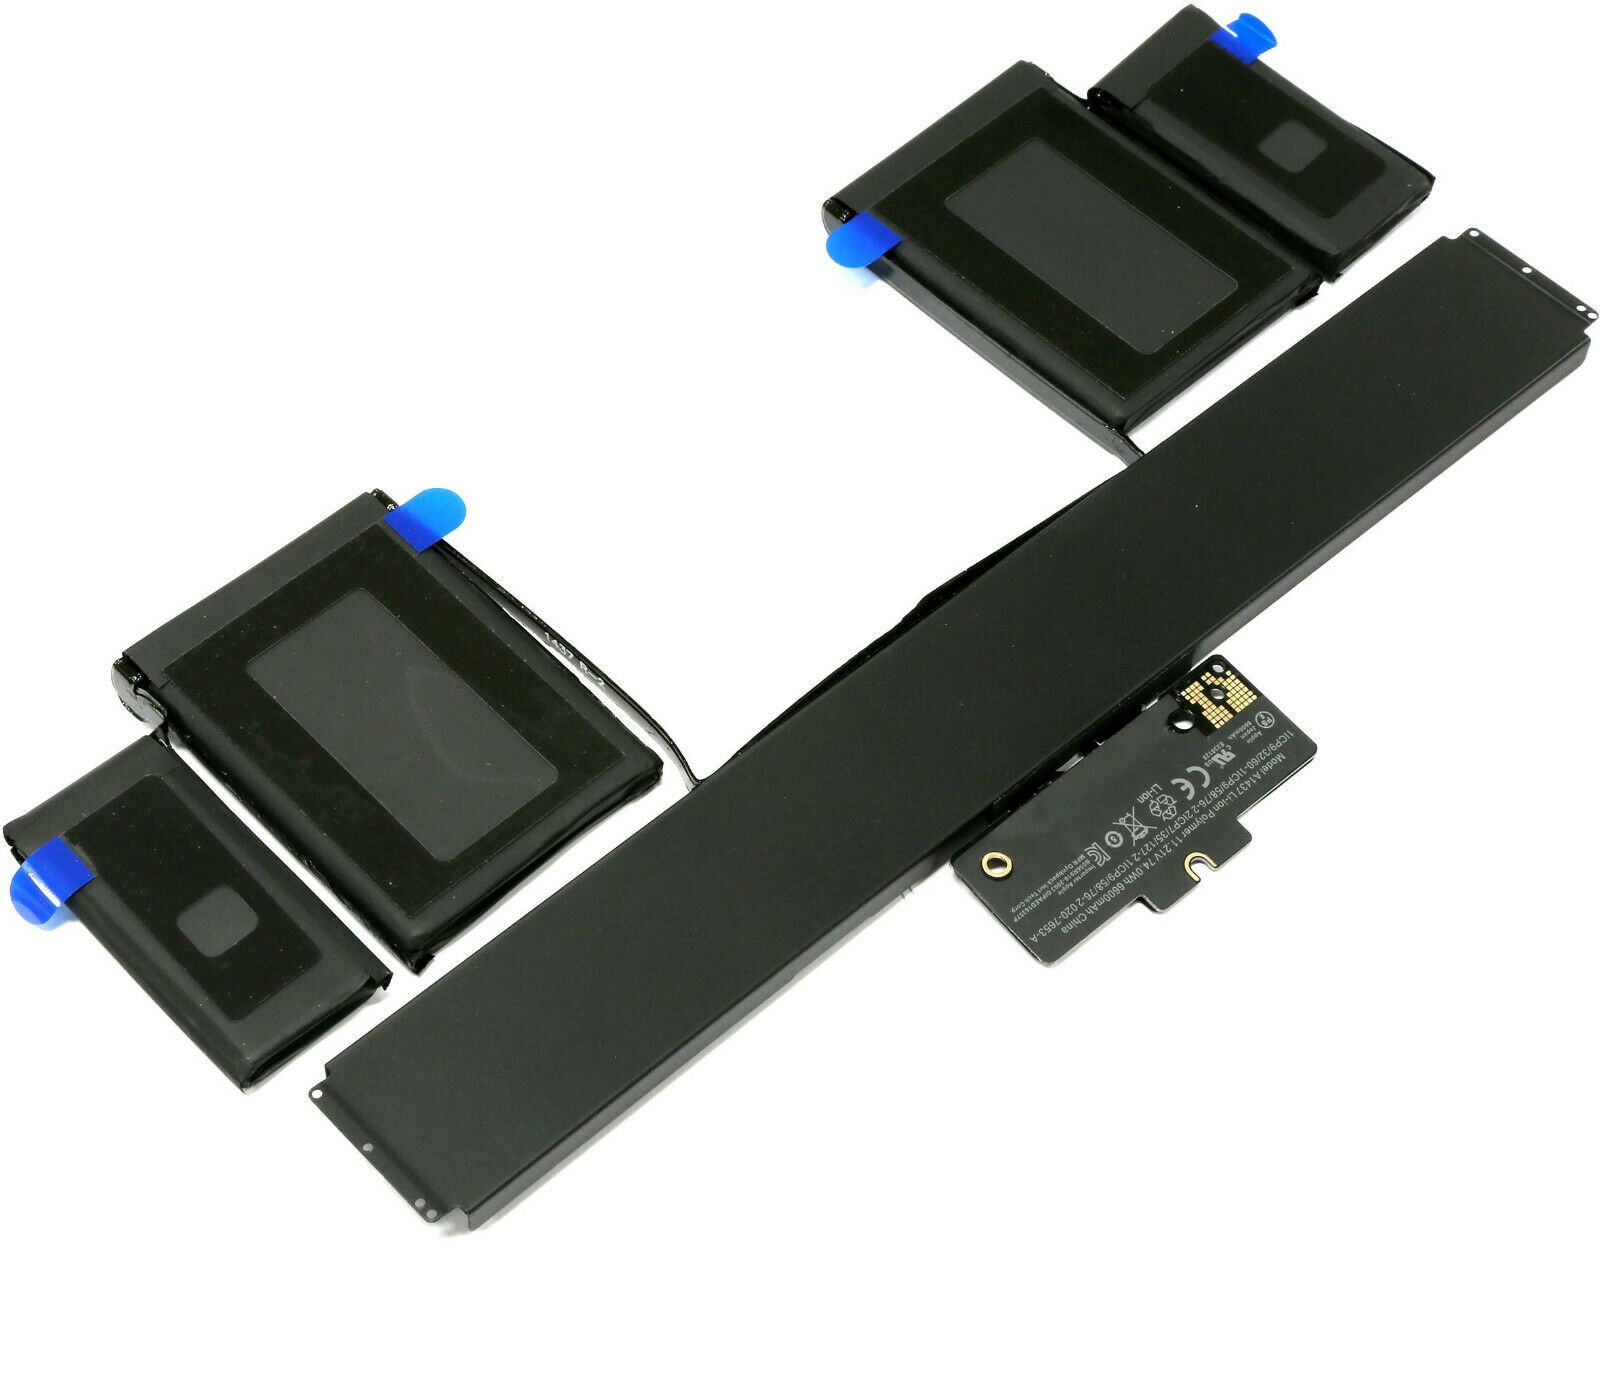 Apple A1425 (Late 2012), A1425 (Late 2012), A1437 (kompatibelt batteri) - Klicka på bilden för att stänga